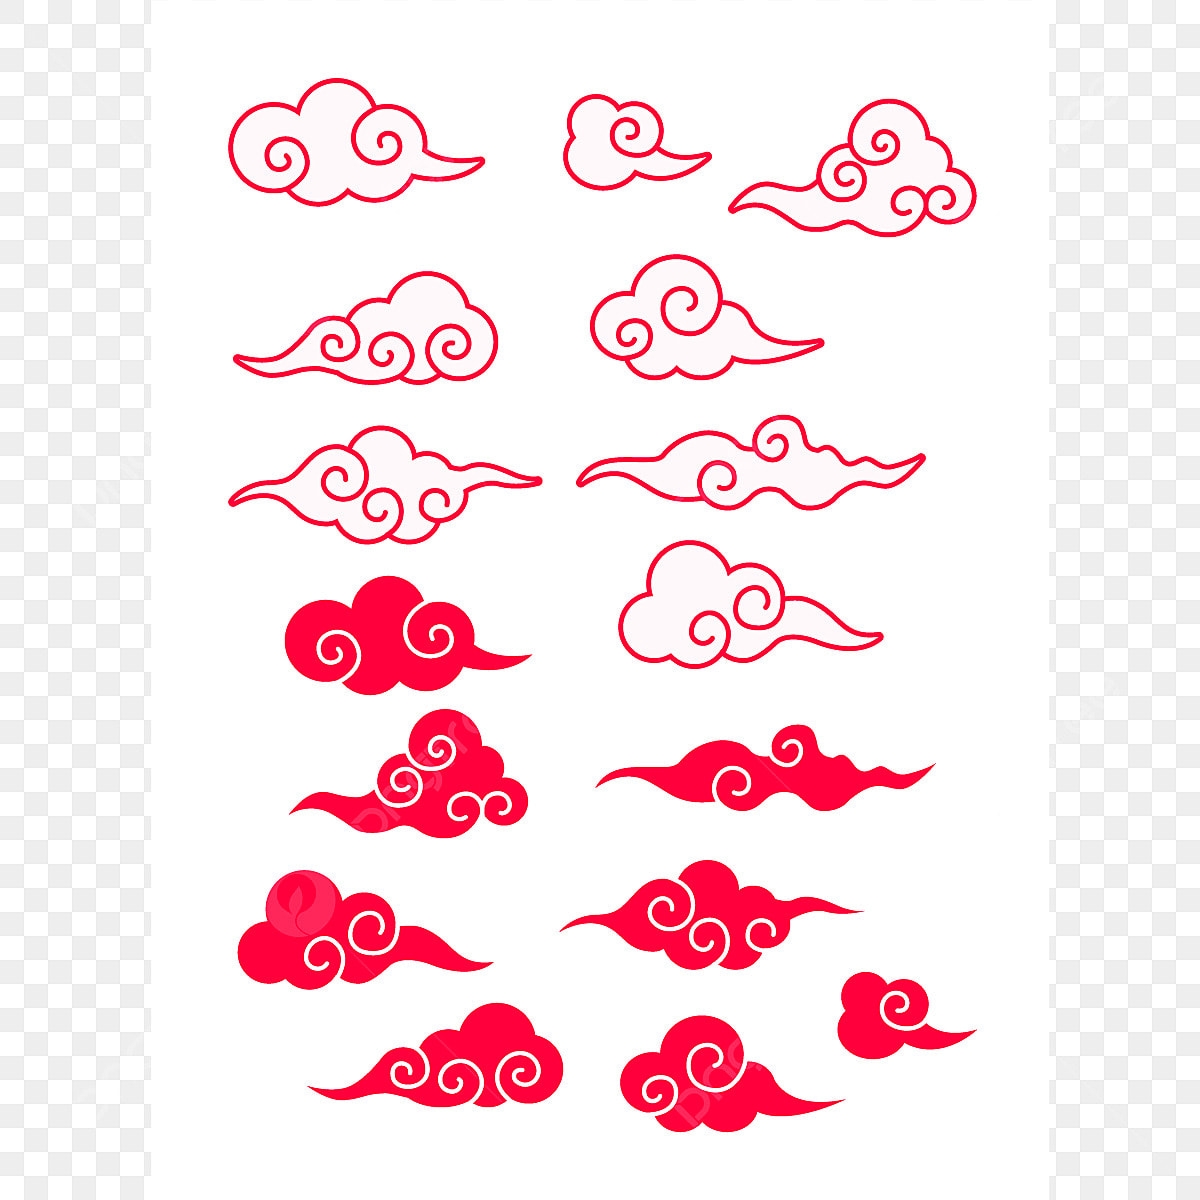 облака в китайском стиле рисунок